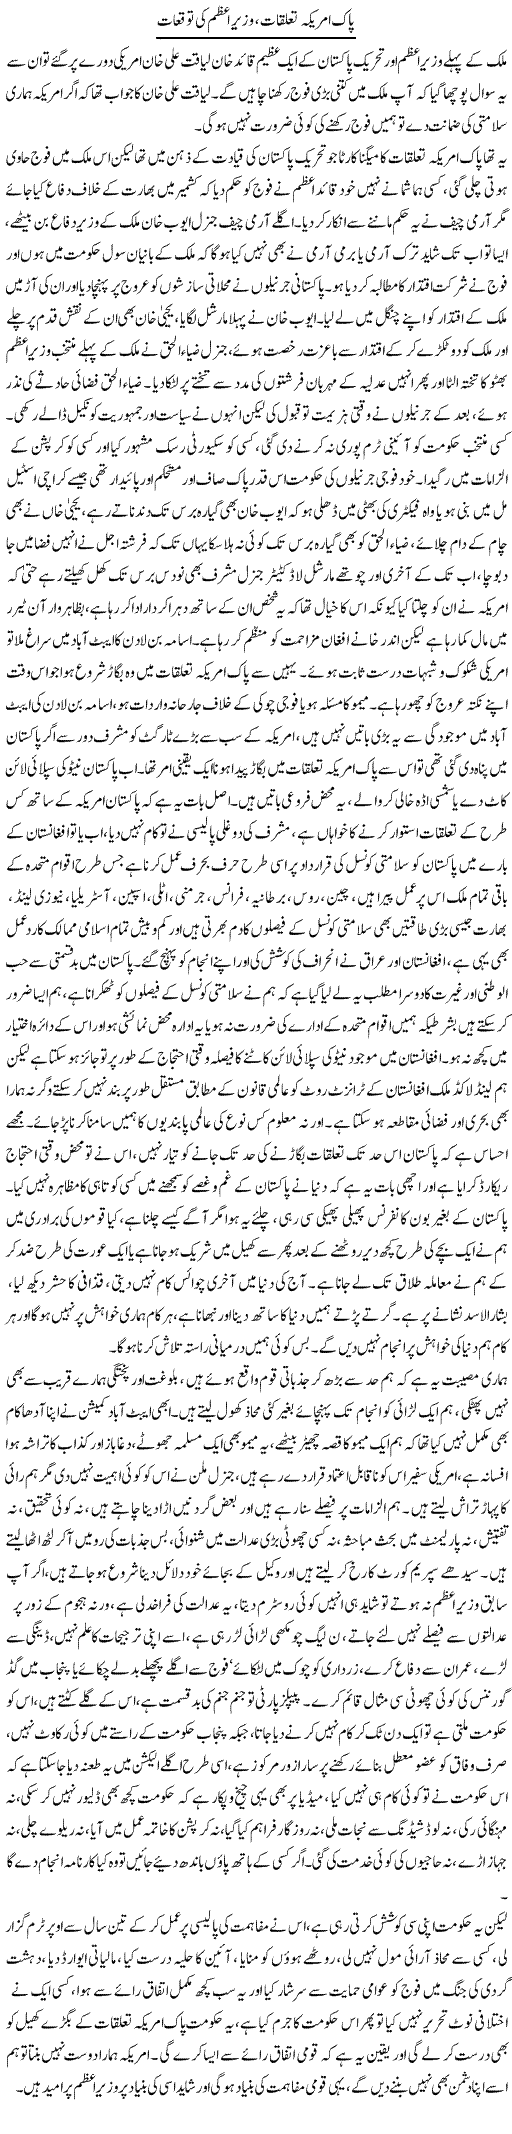 US Pakistan Relations Express Column Asadullah Ghalib 8 December 2011